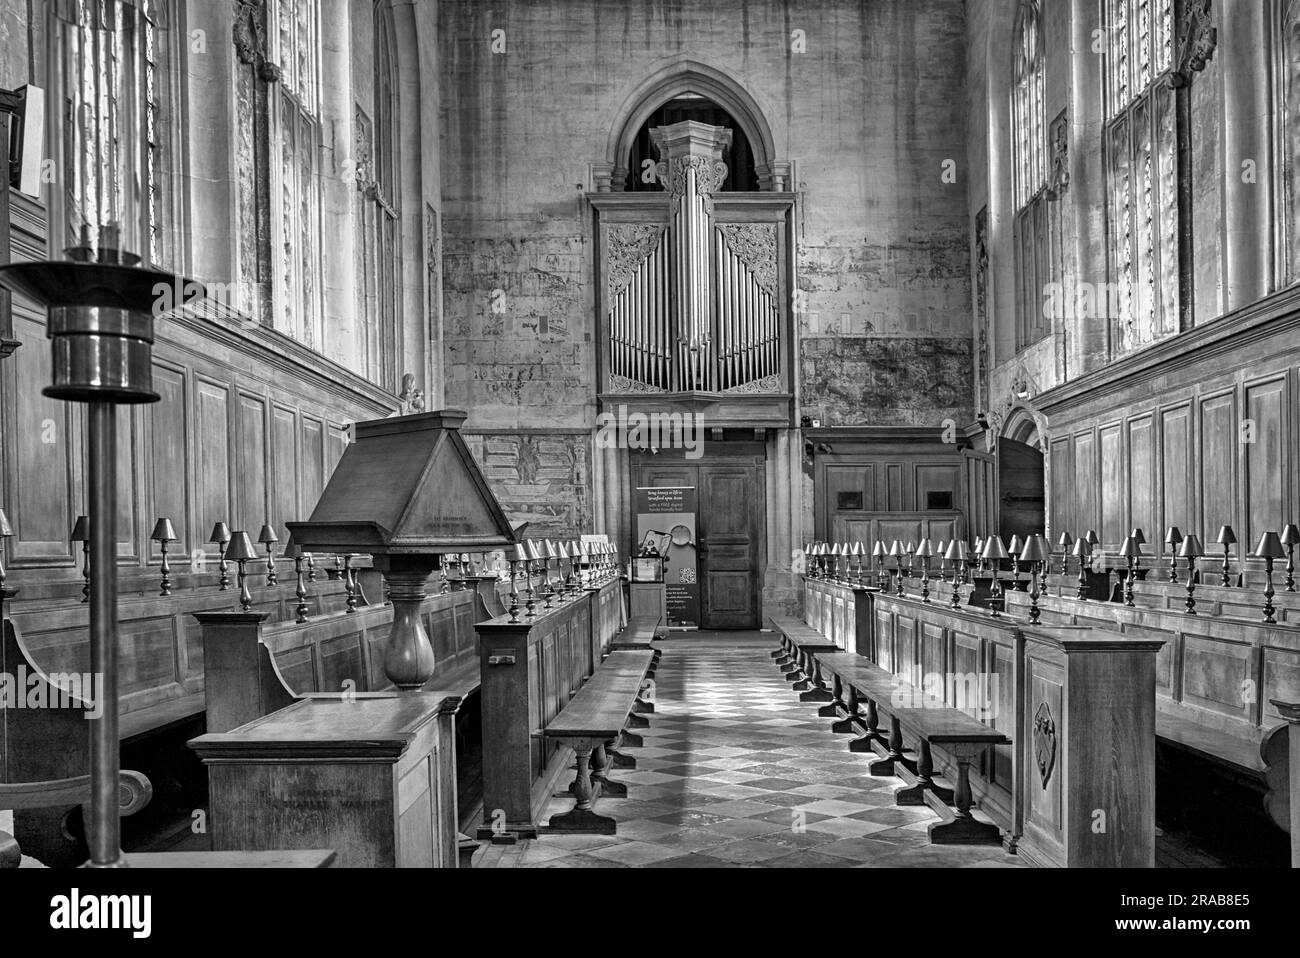 Intérieur de Guild Chapel Stratford-upon-Avon, Angleterre, Royaume-Uni. Photographie en noir et blanc, Banque D'Images